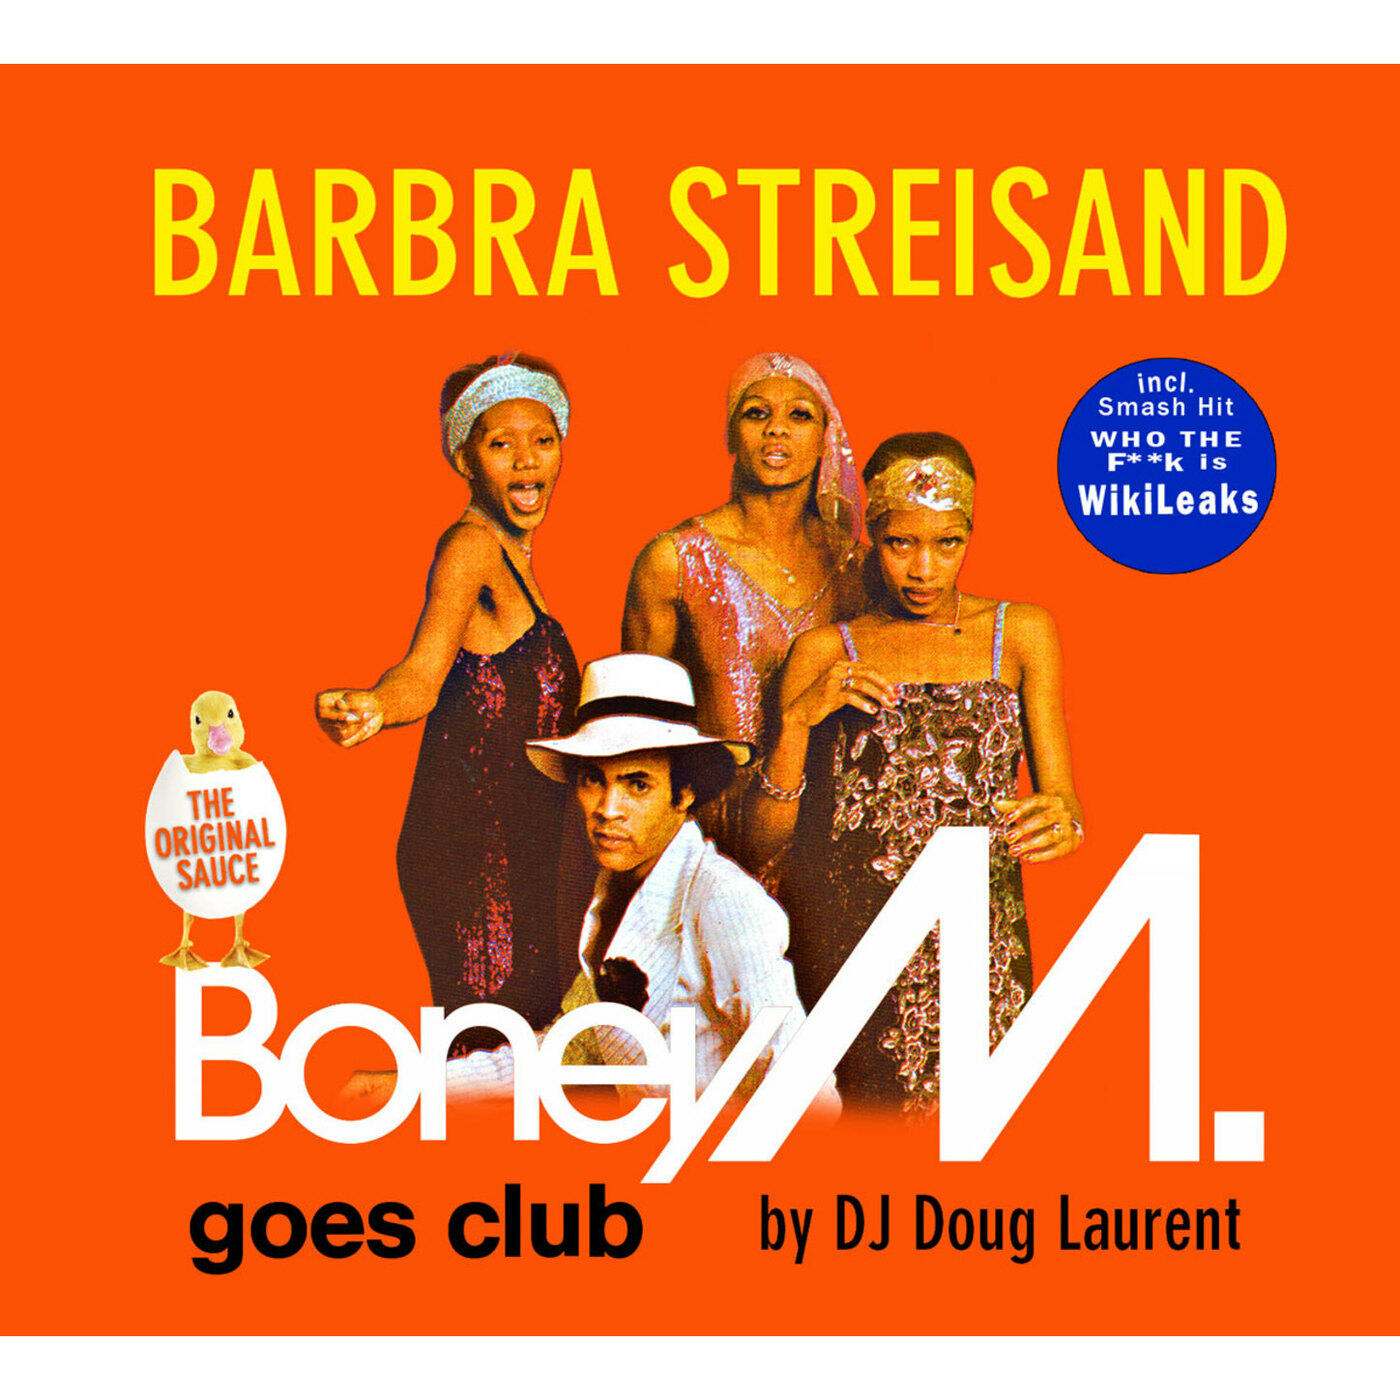 Группа Boney m.. Boney m Barbra Streisand. Первый состав Boney m. Marilyn Monroe vs Barbra Streisand Boney m..